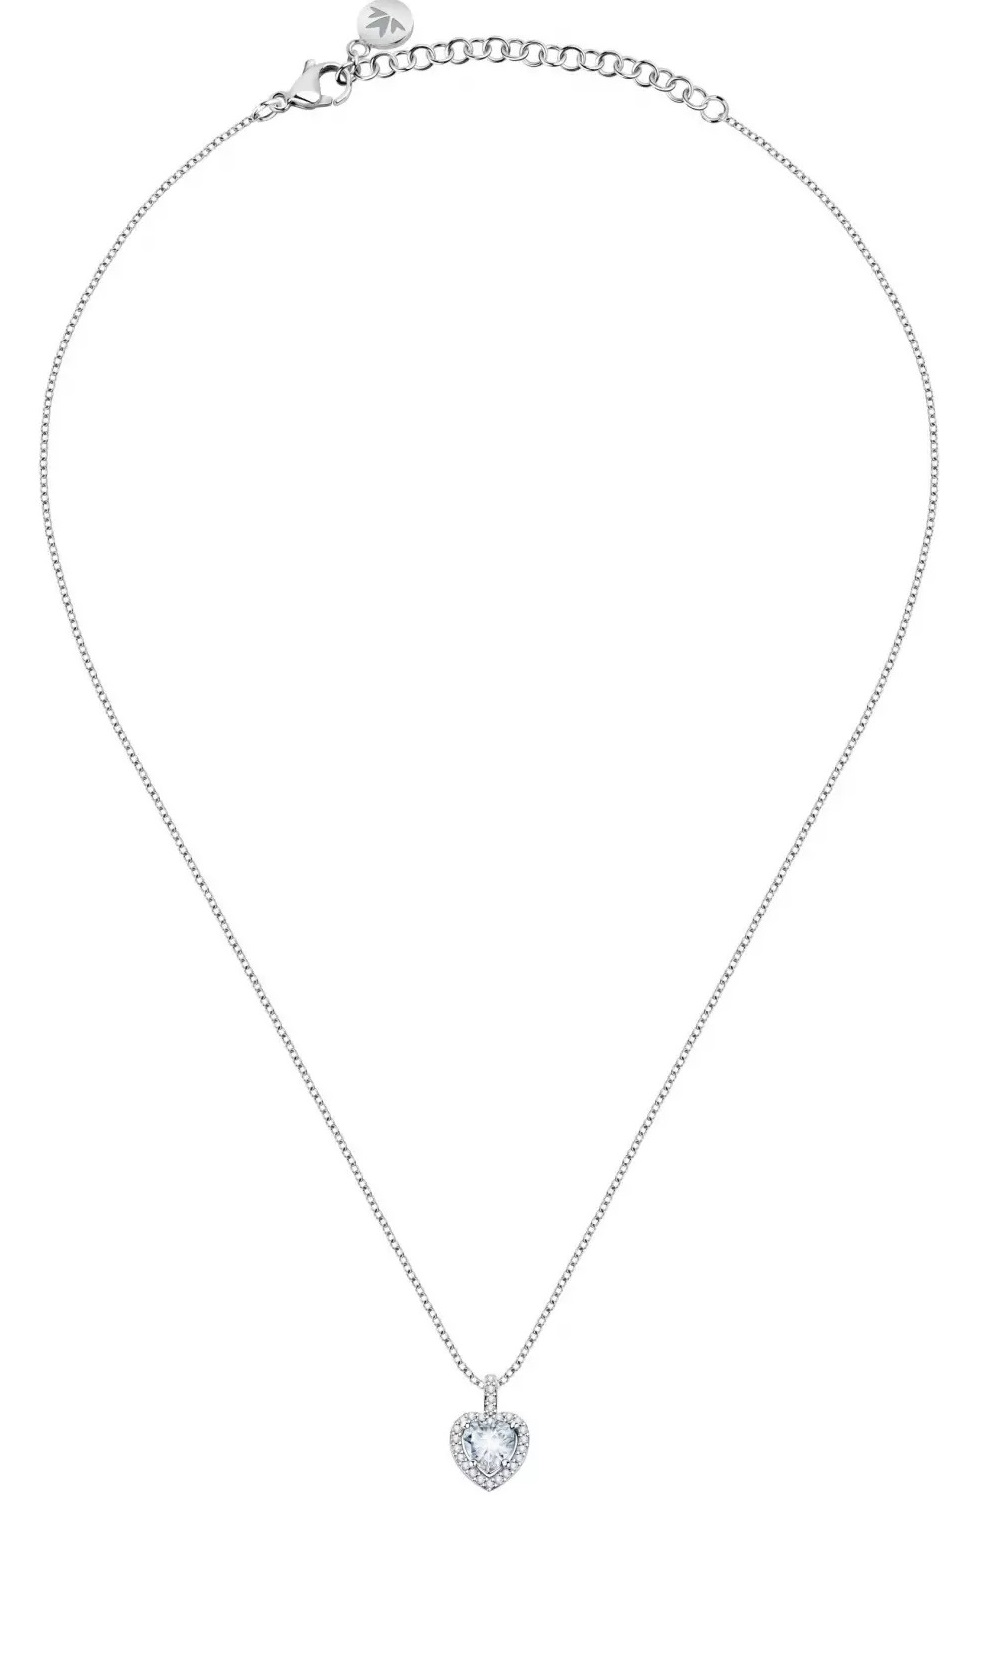 Morellato Romantický strieborný náhrdelník so srdiečkom Tesori SAVB02 (retiazka, prívesok)